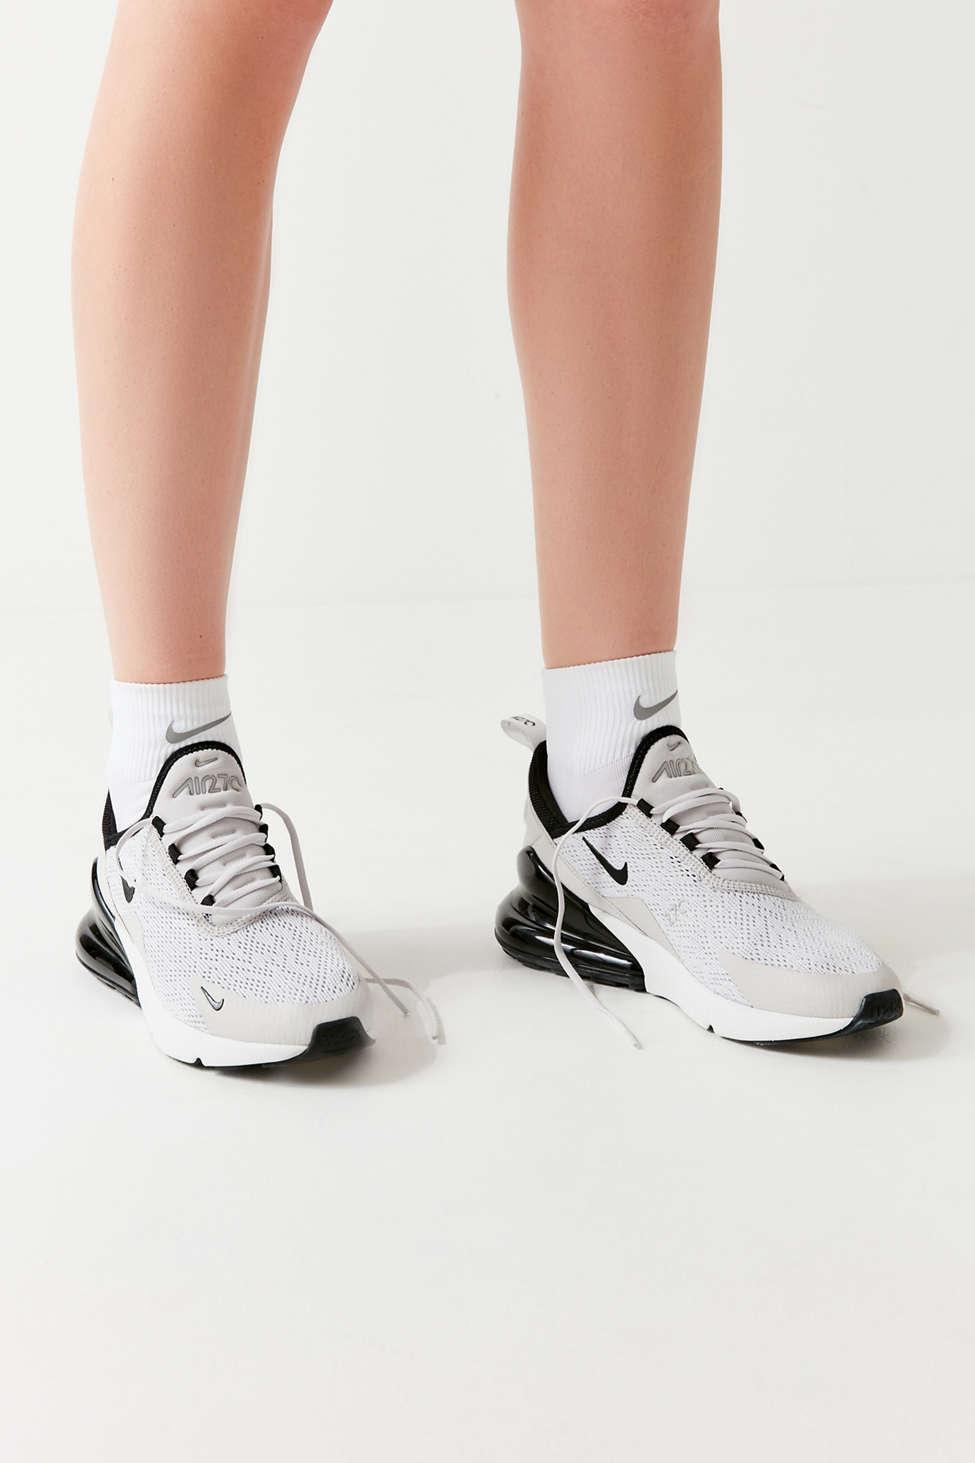 Nike Nike Spark Lightweight Quarter Sock in White - Lyst